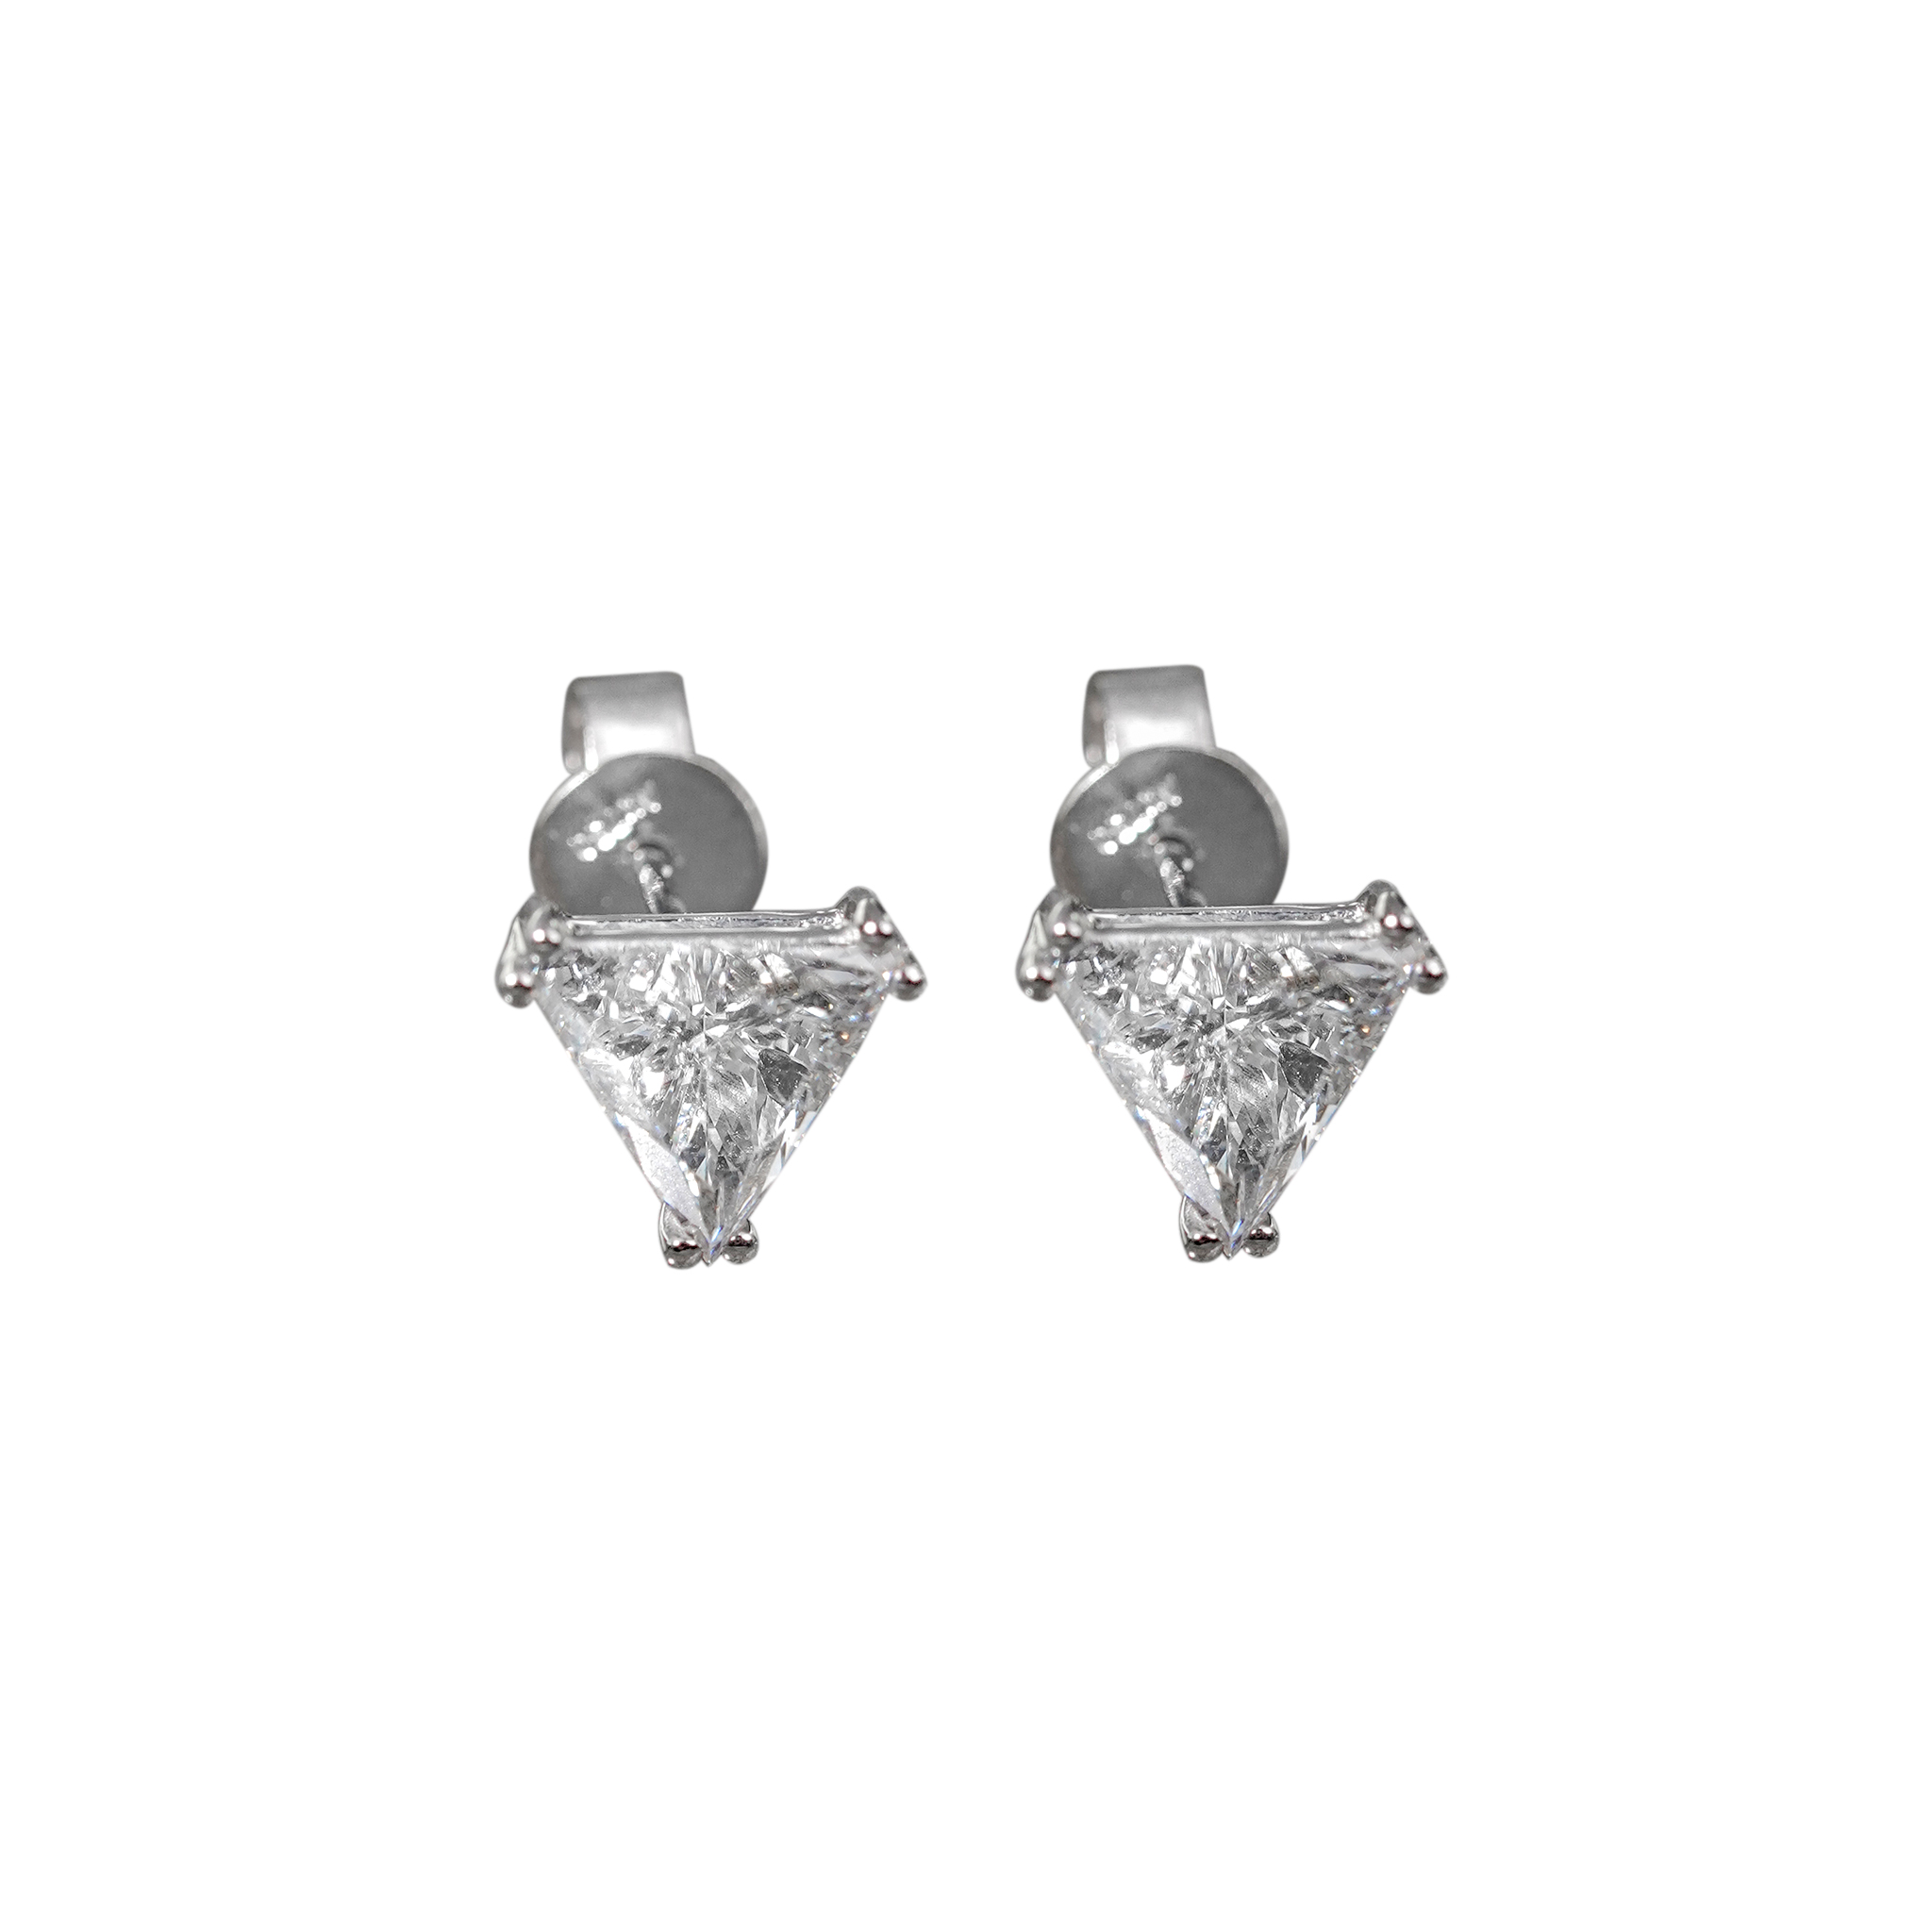 Buy Trilliant Flow Diamond Hoop Earrings onlineKARAGIRI  FESTIVE SALE   Karagiri